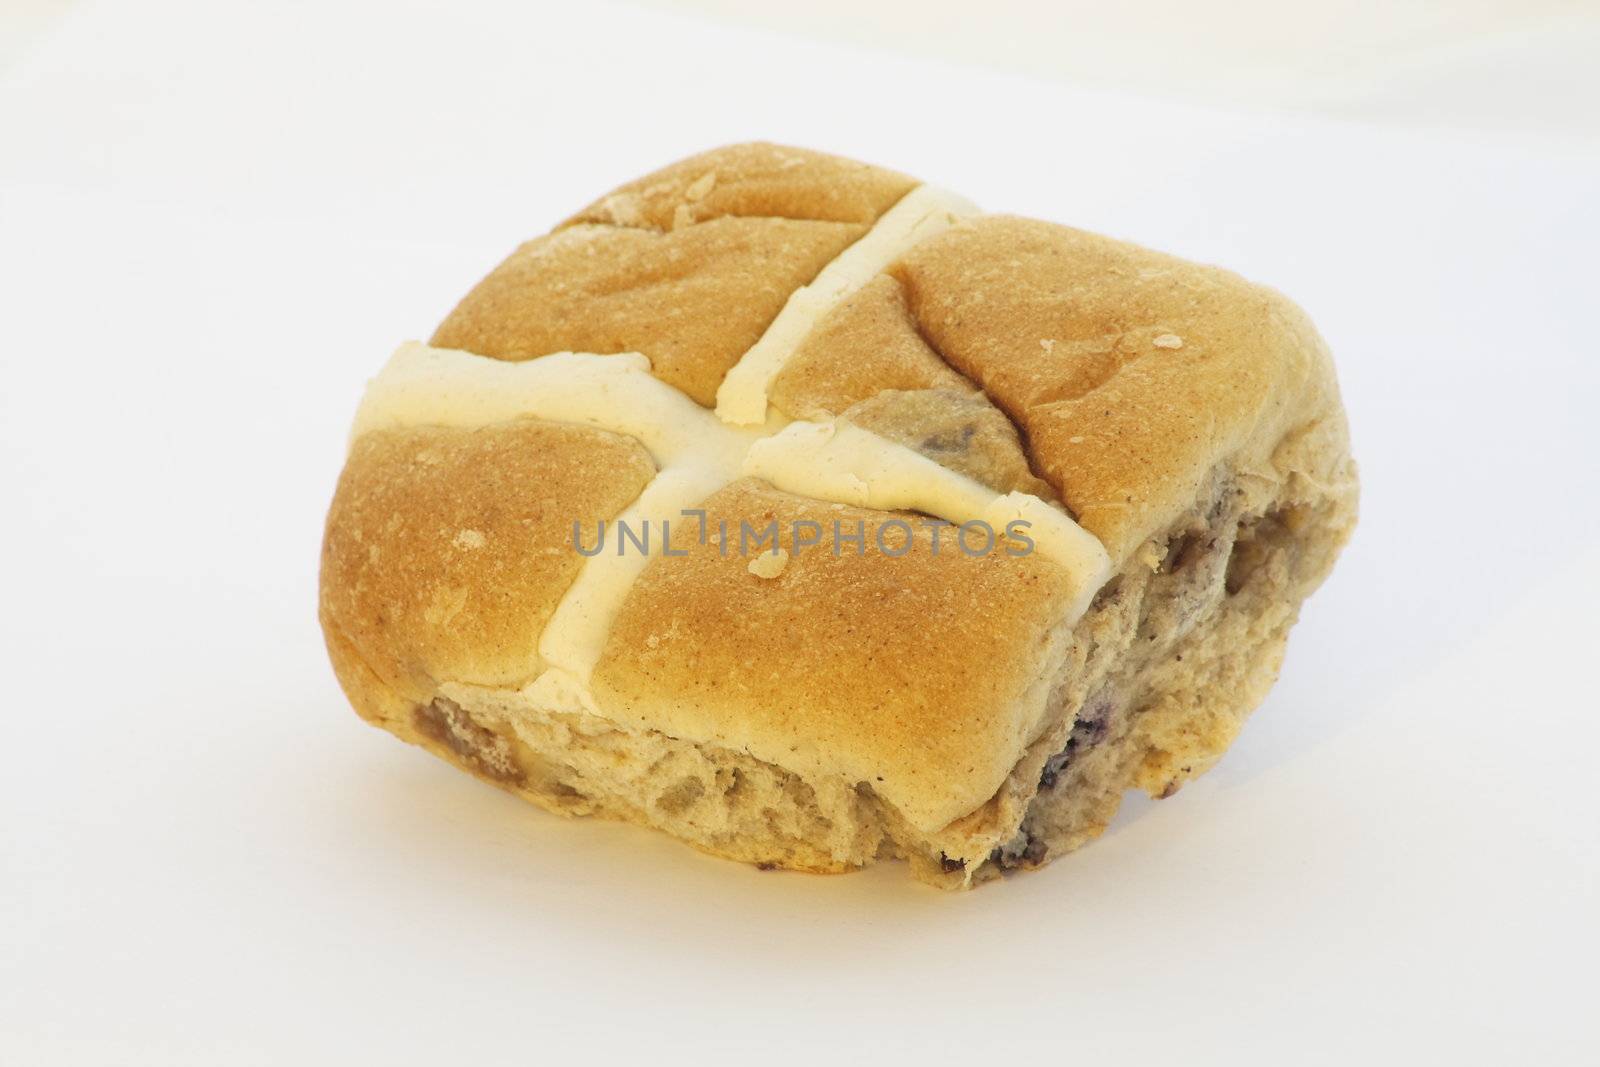 hot cross bun by leafy